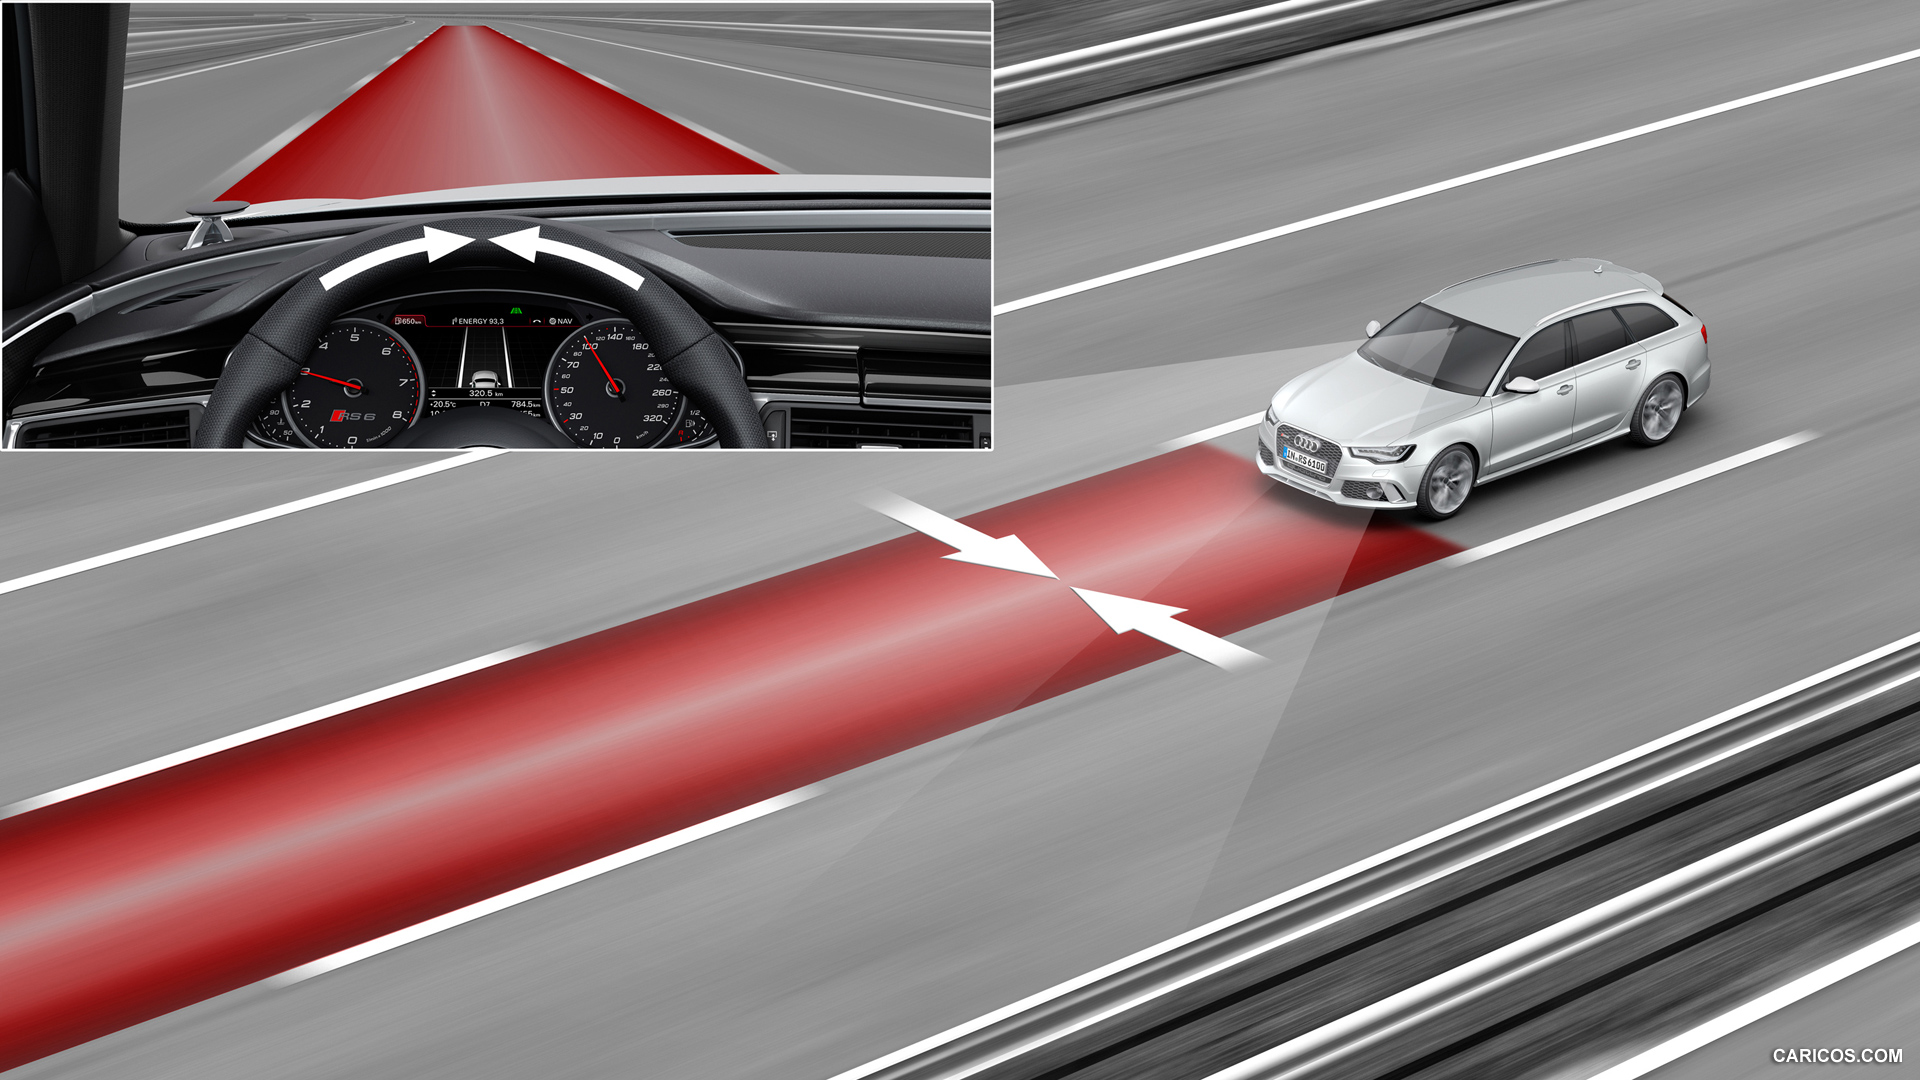 Ассистент полосы движения. Система удержания в полосе Lane assist. Audi a4 Lane assist. Audi a6 Lane assist. Система помощи движения по полосе (Lane assist).